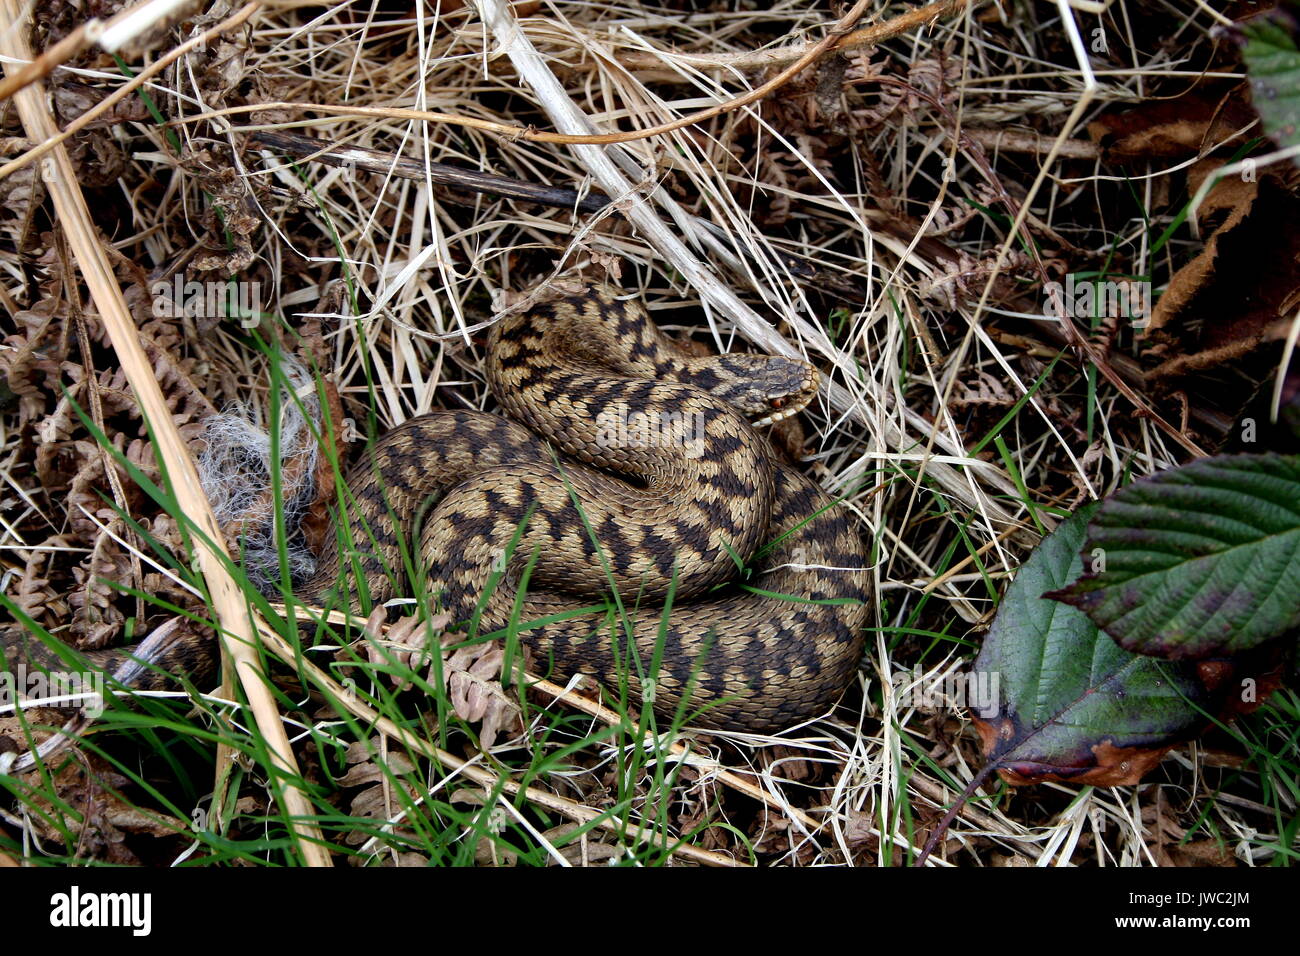 L'additionneur européen commun, Vipera berus, sur les collines de Malvern, Worcestershire. Femelle adulte serpent venimeux UK Banque D'Images